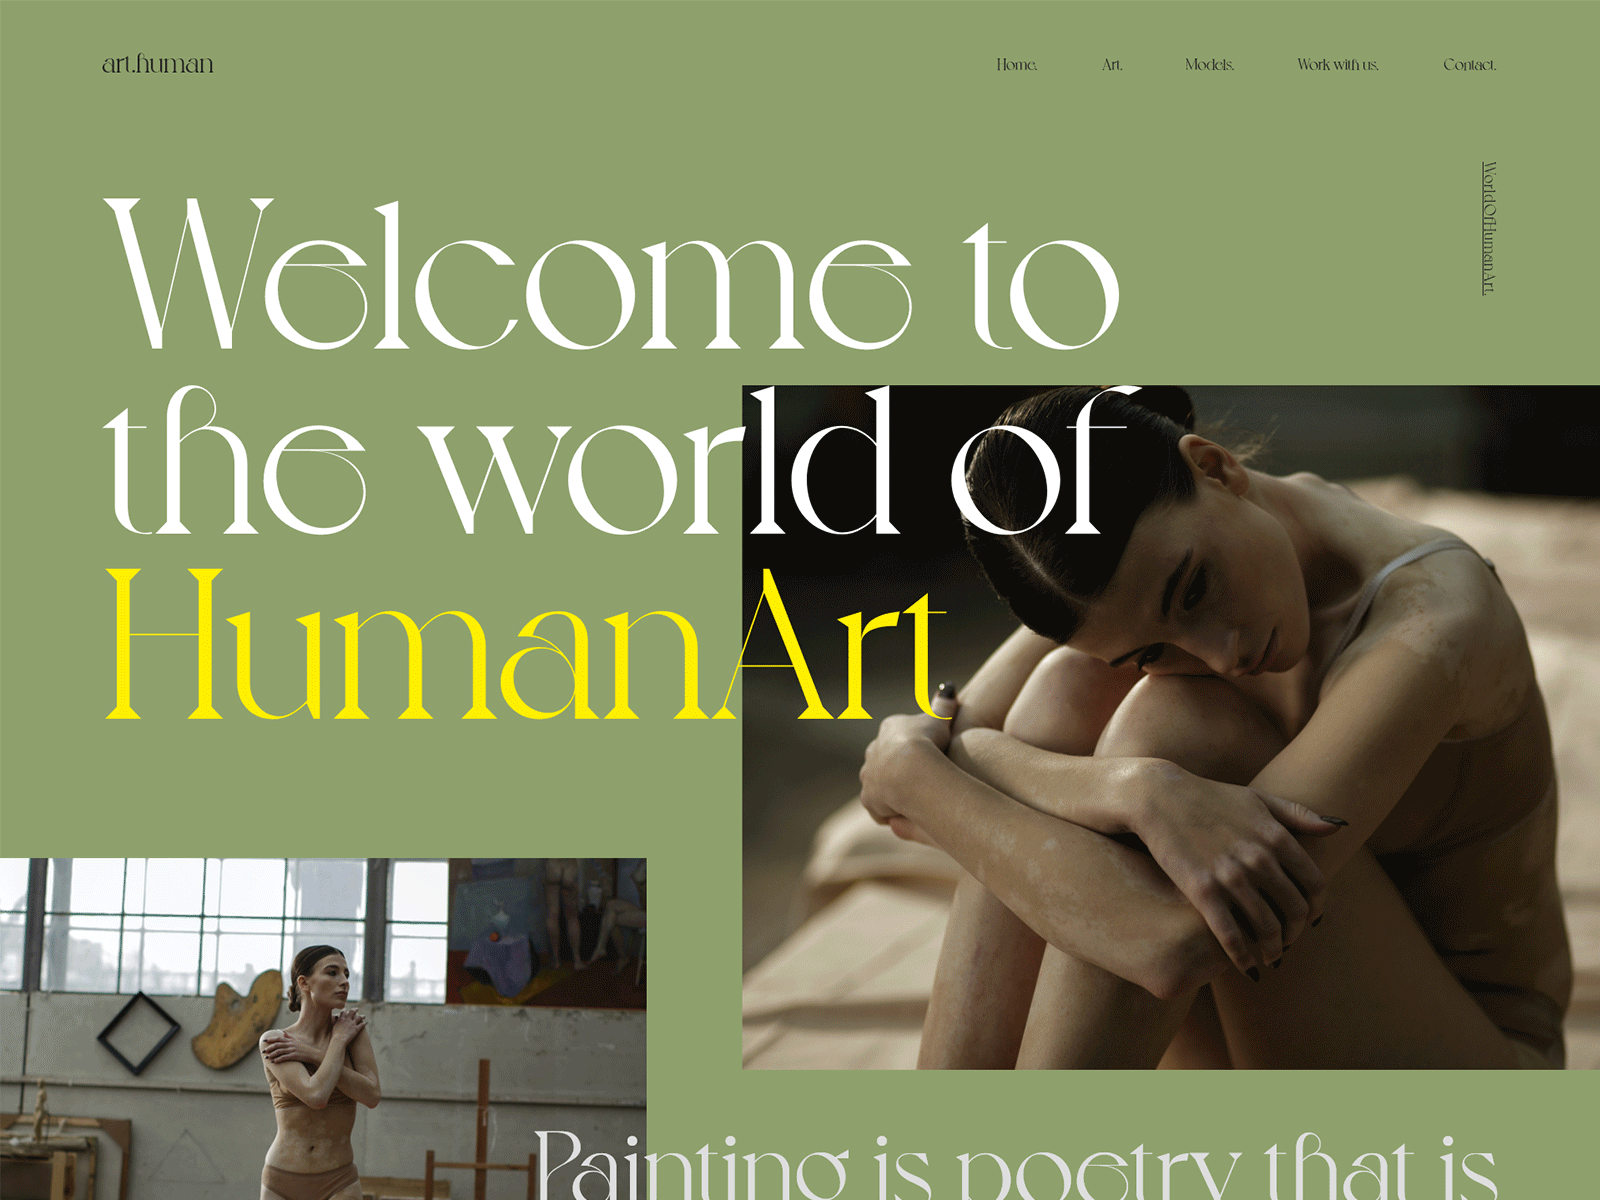 Human art website